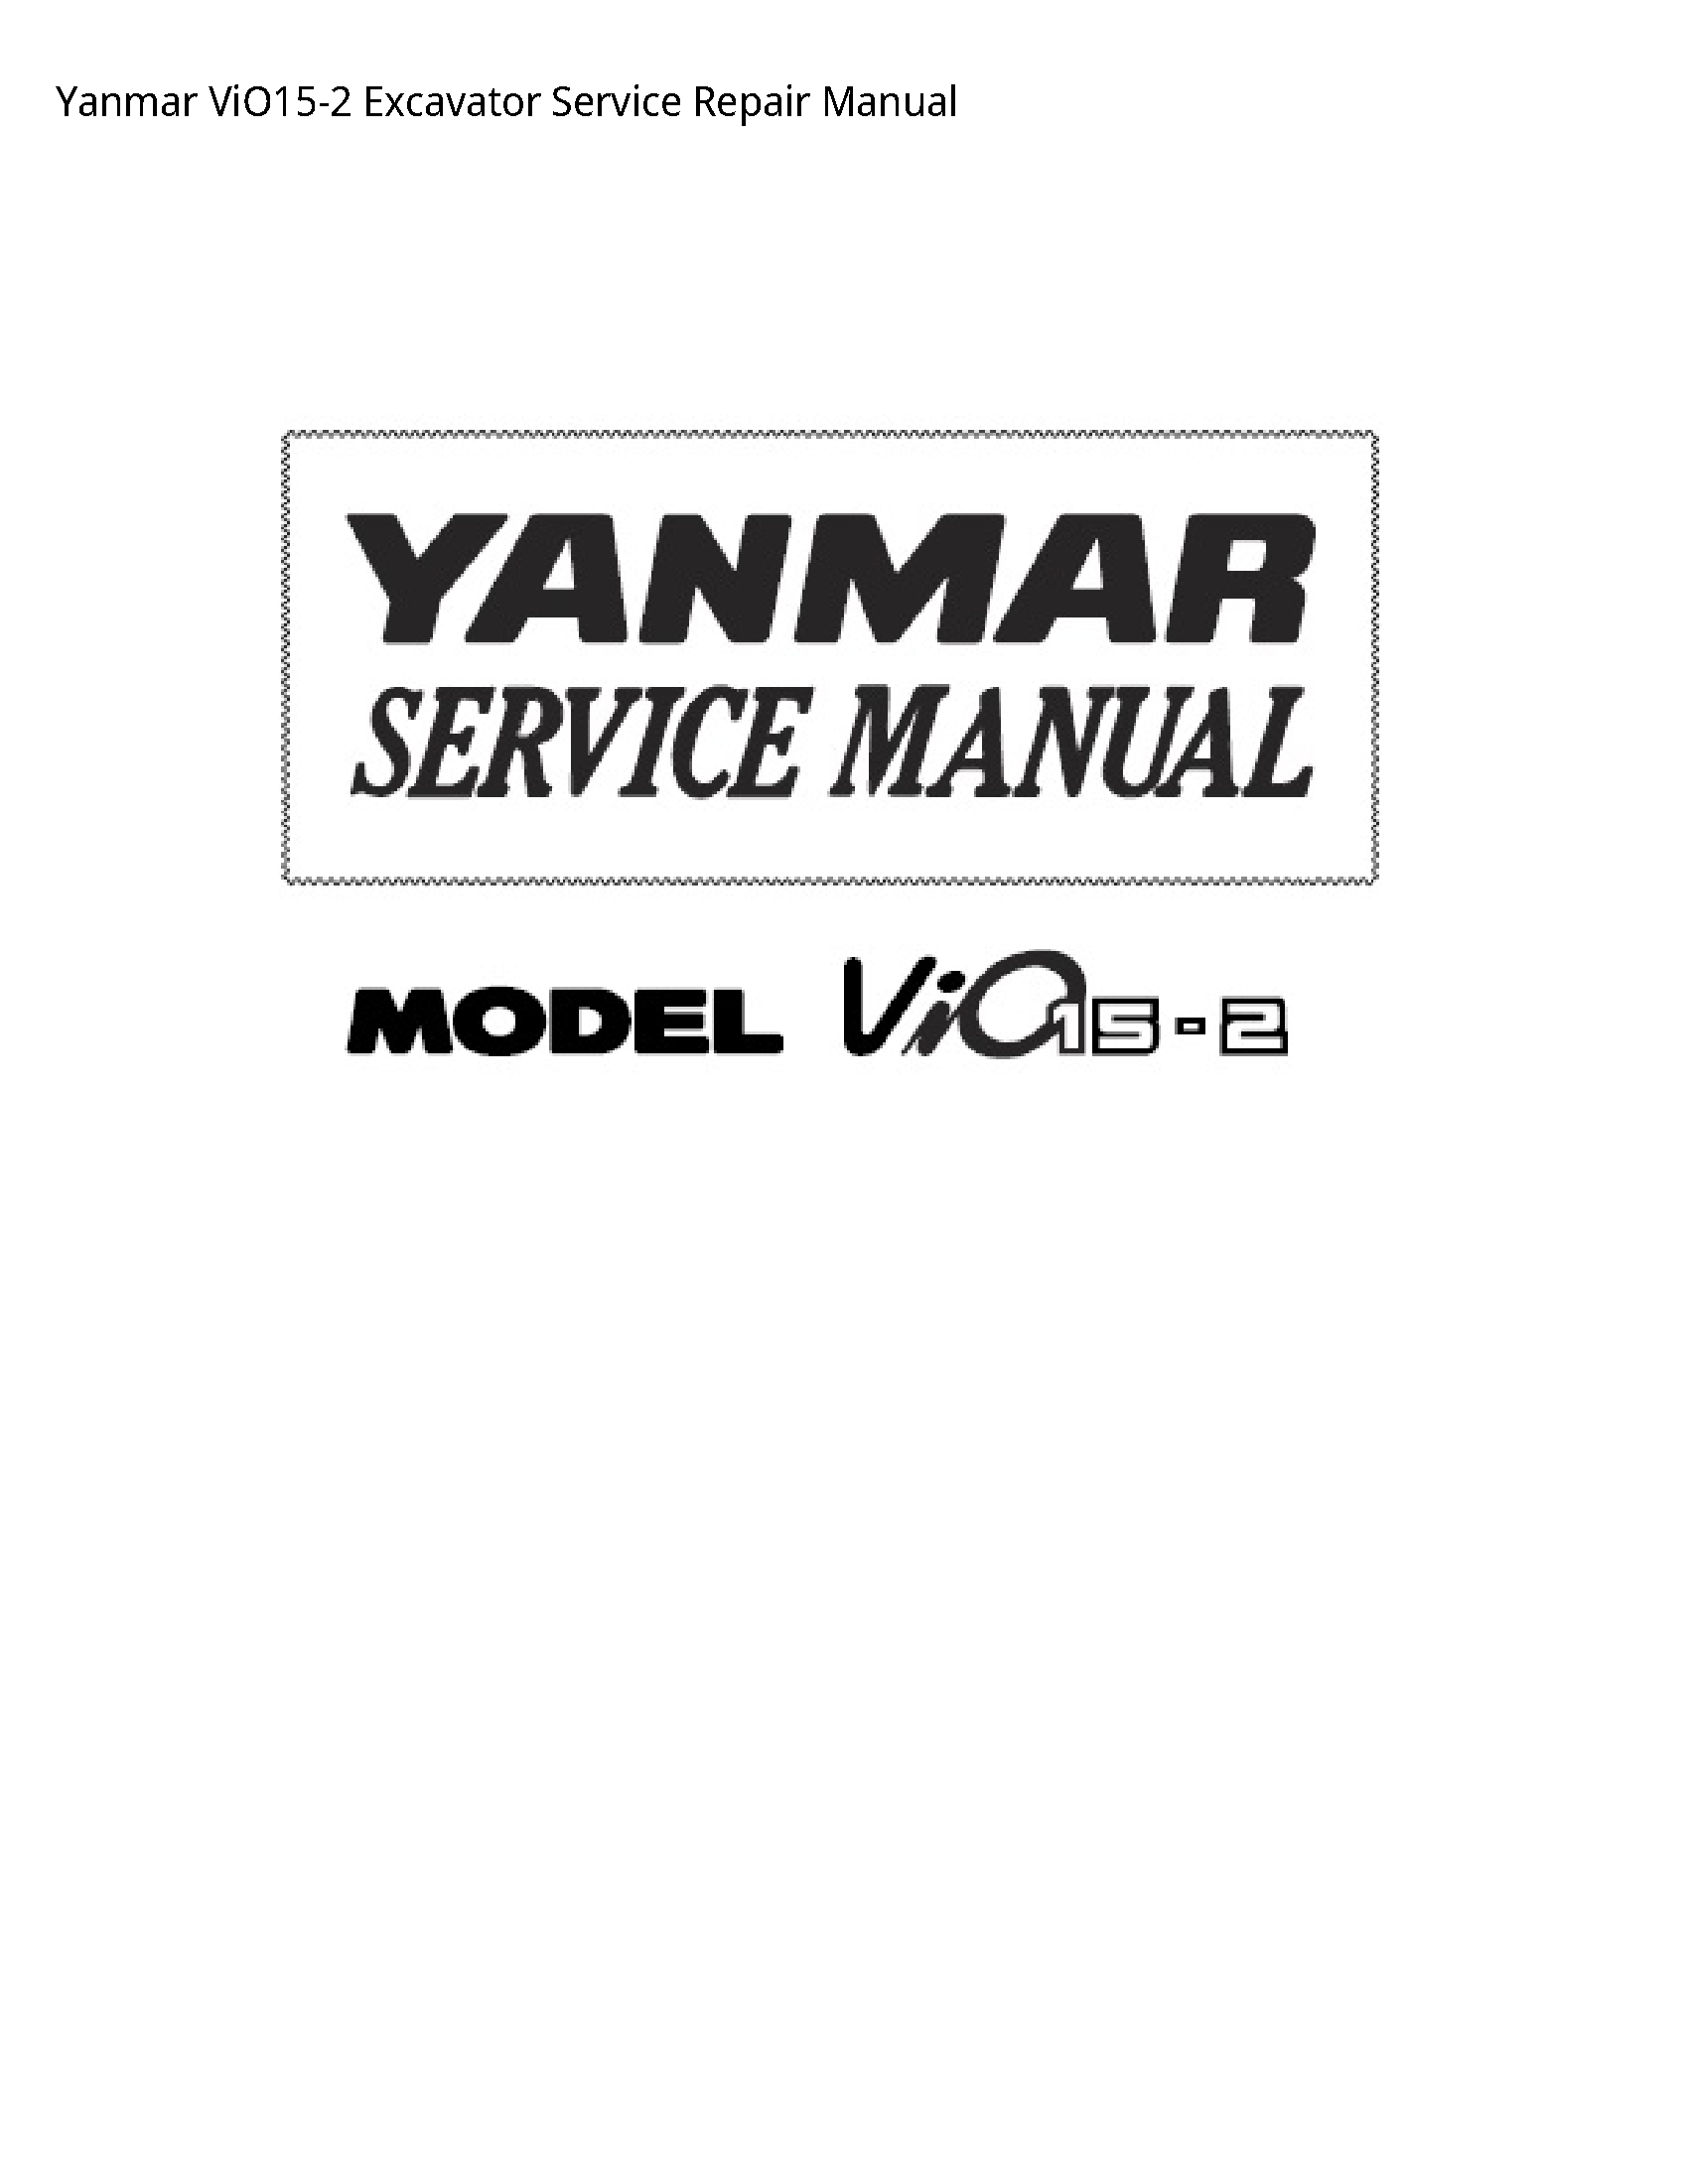 Yanmar ViO15-2 Excavator manual